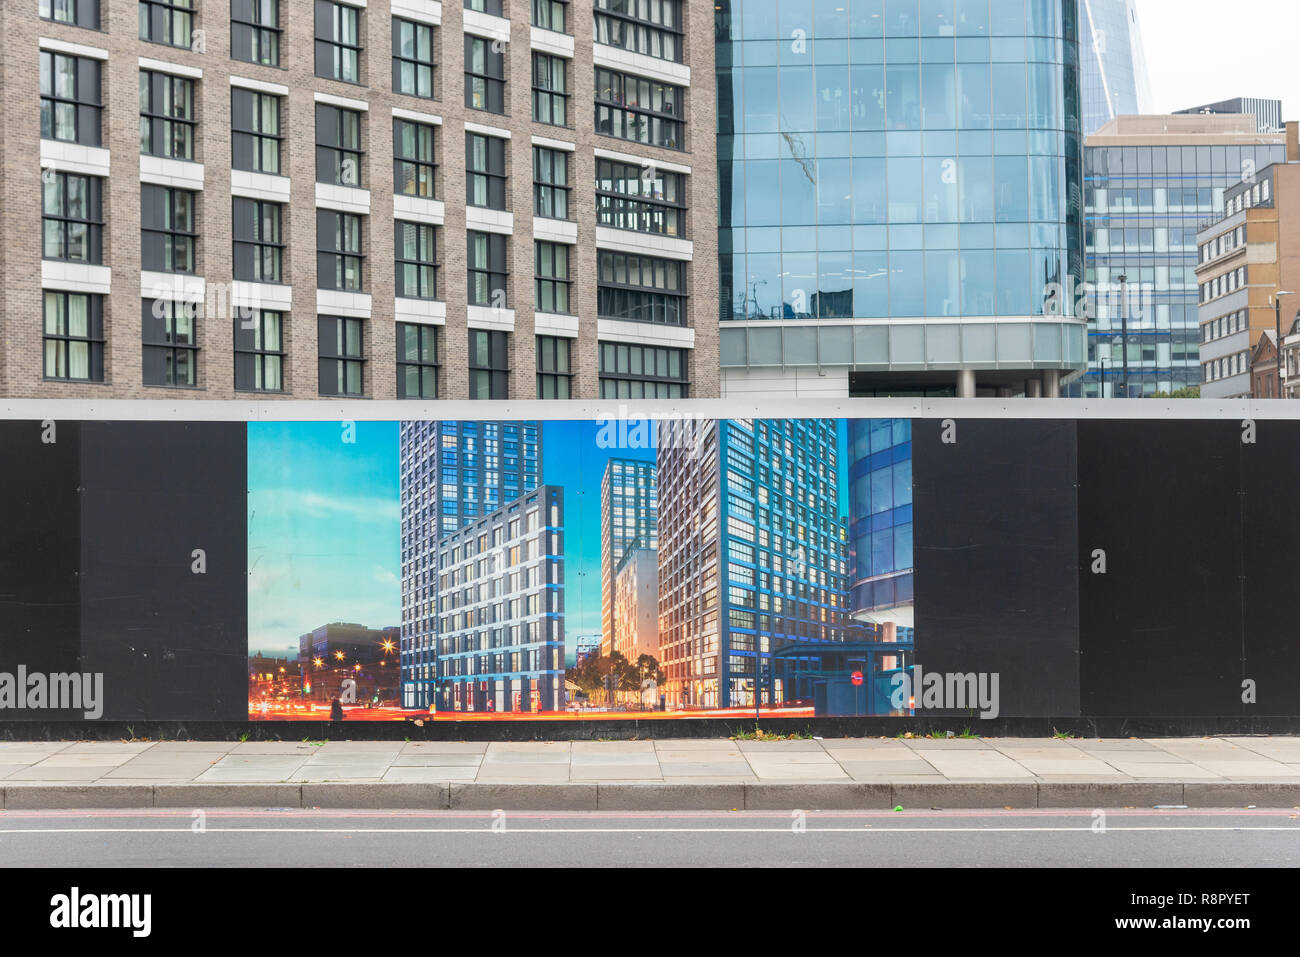 Das Horten, wie neue Office Entwicklung aussehen wird, wenn sie fertig sind, Aldgate, City of London, Großbritannien Stockfoto